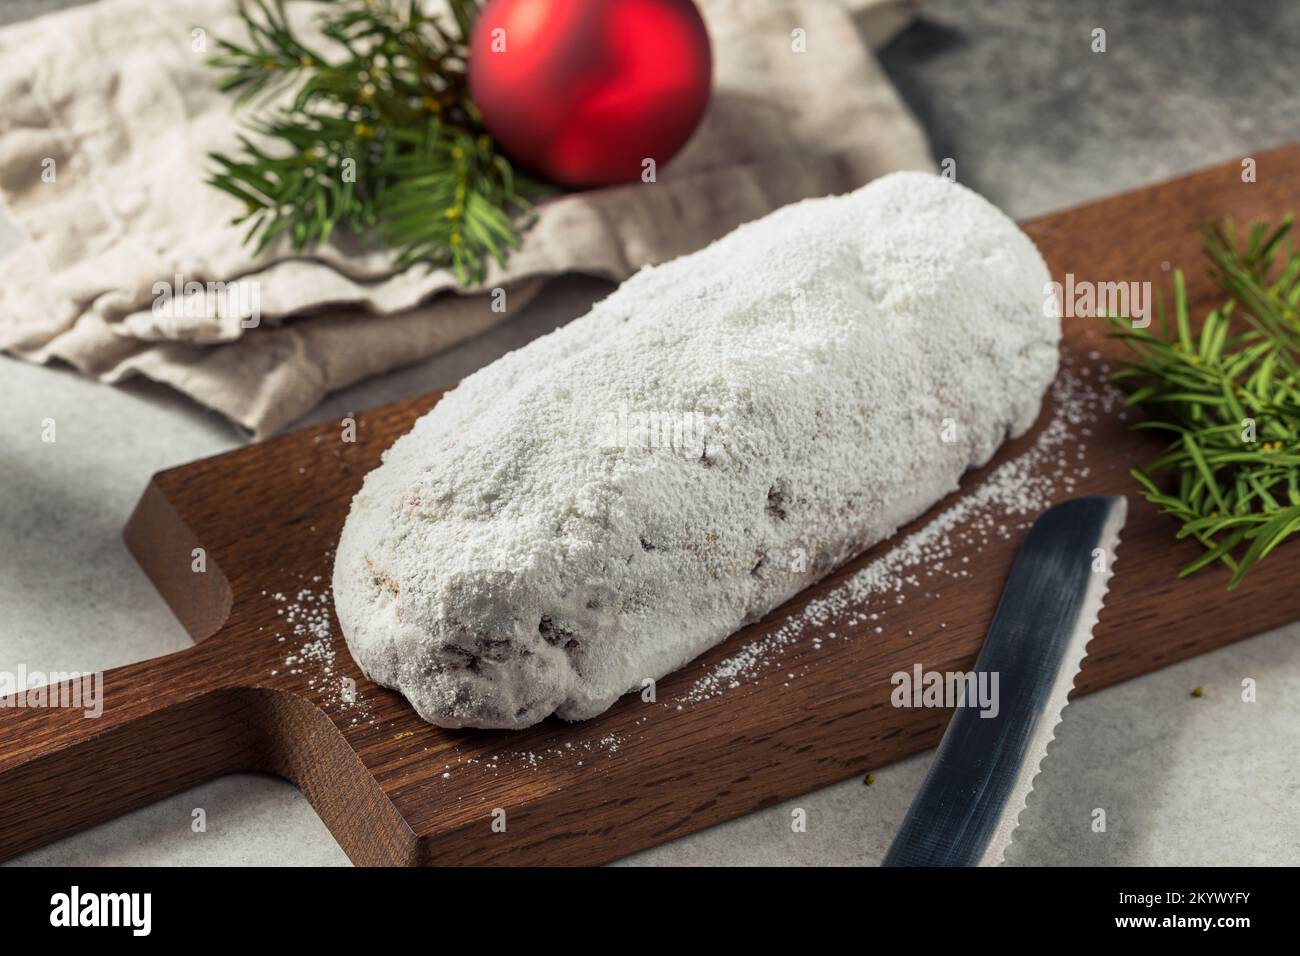 Pane stollen di Natale fatto in casa con frutta secca e zucchero in polvere Foto Stock